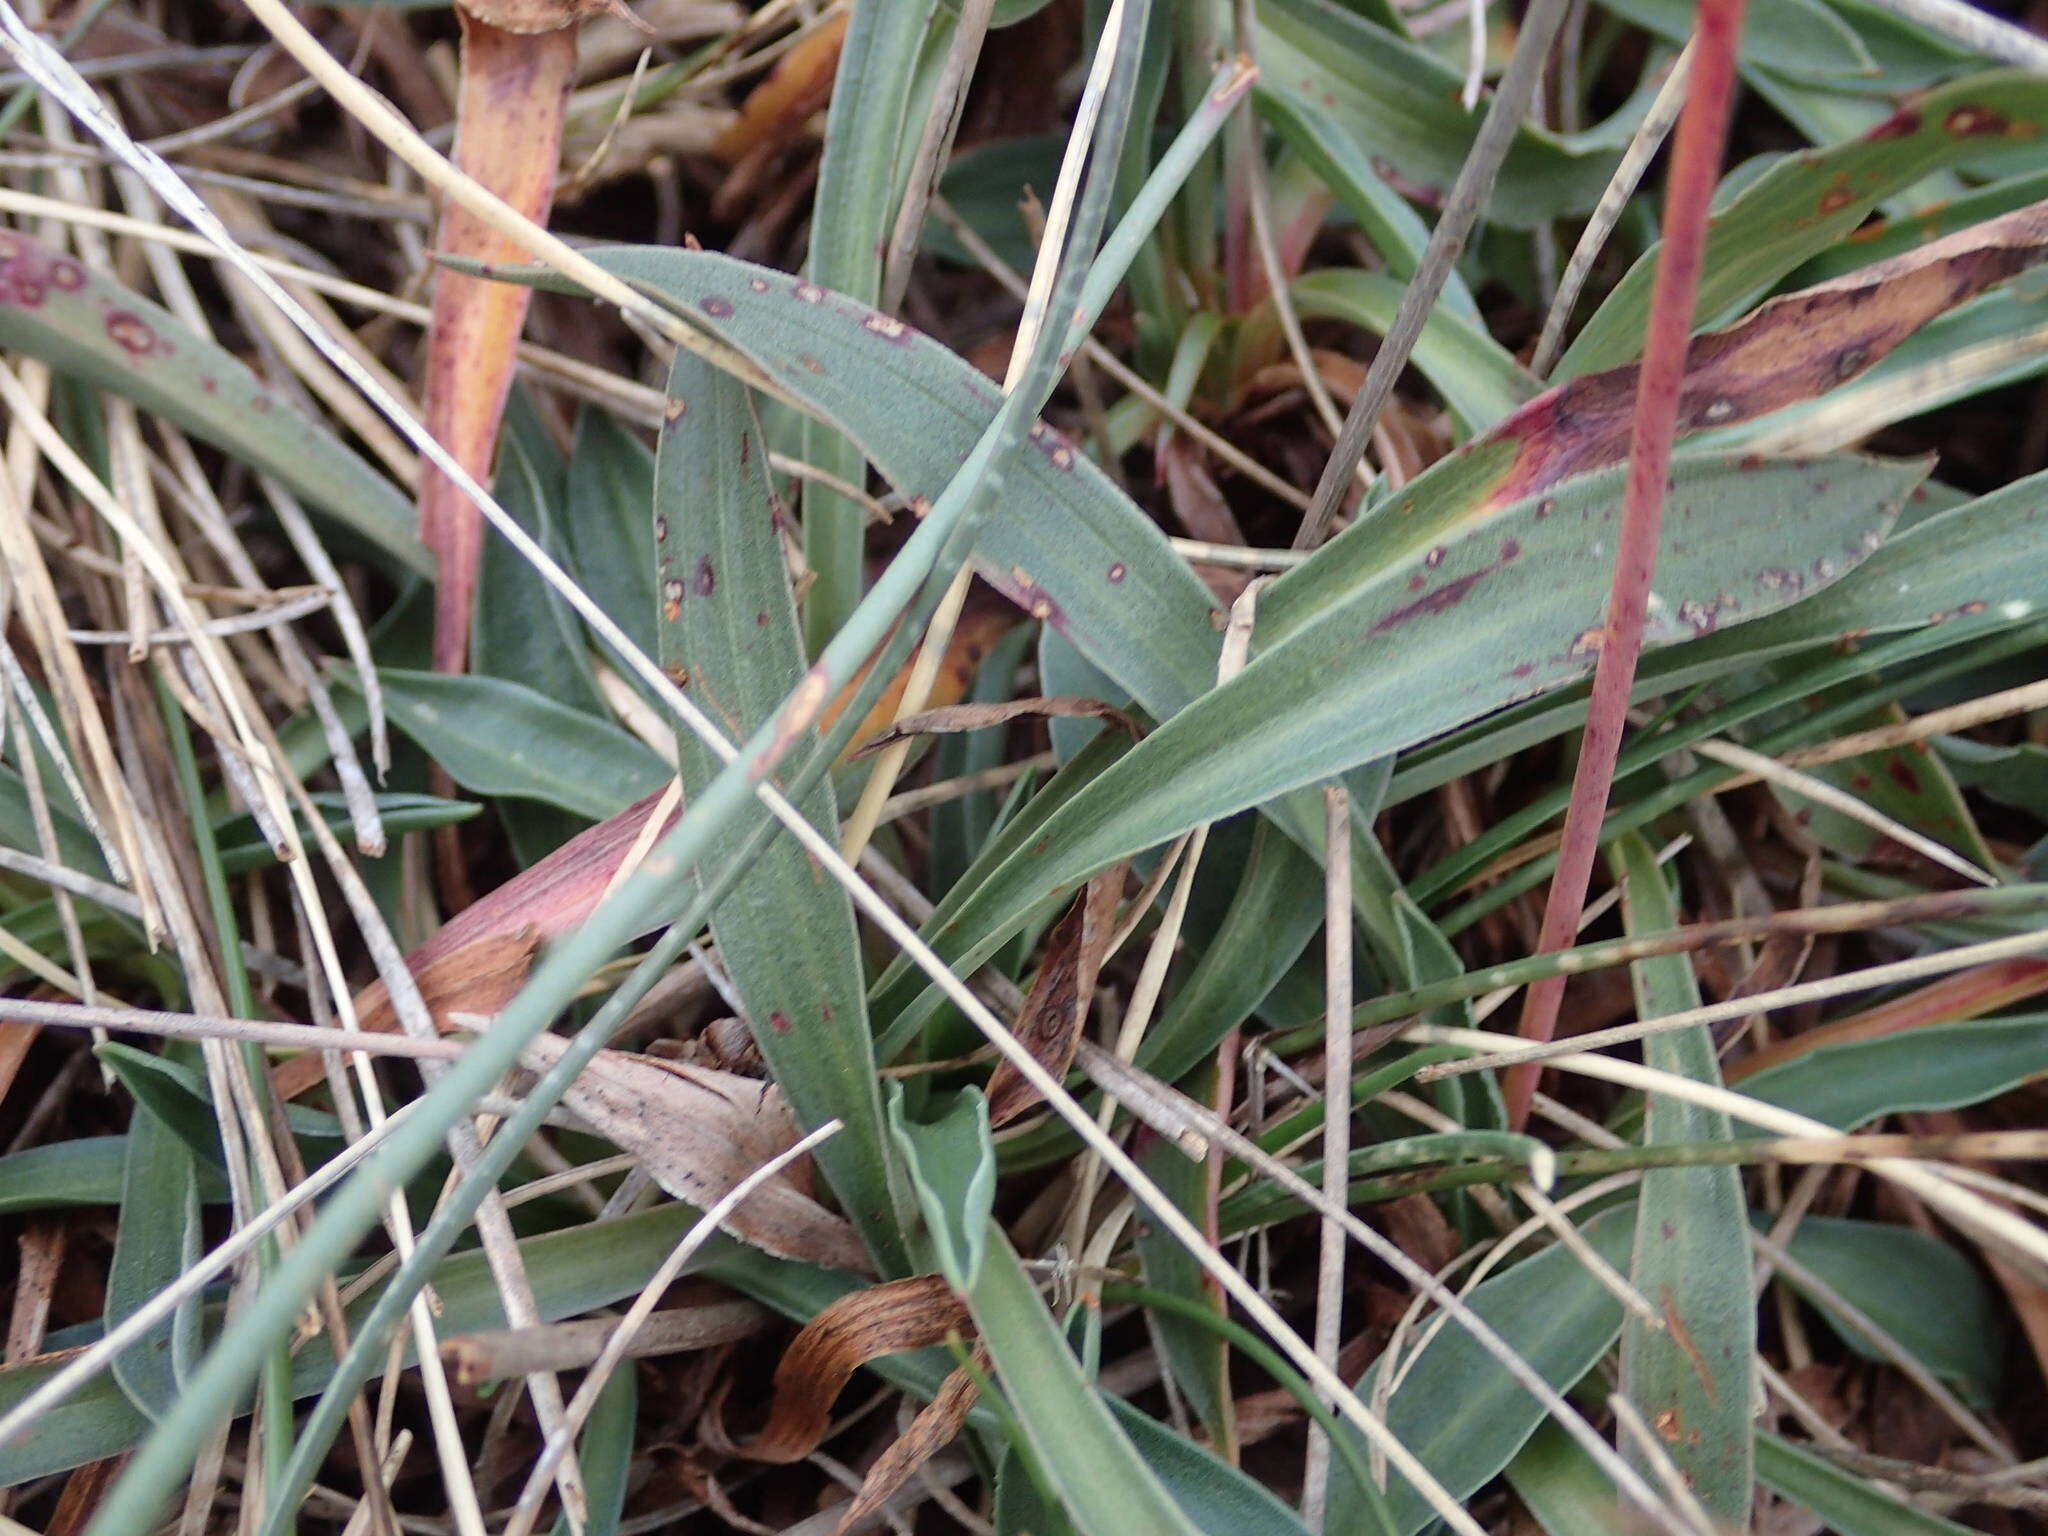 Sivun Armeria arenaria subsp. arenaria kuva